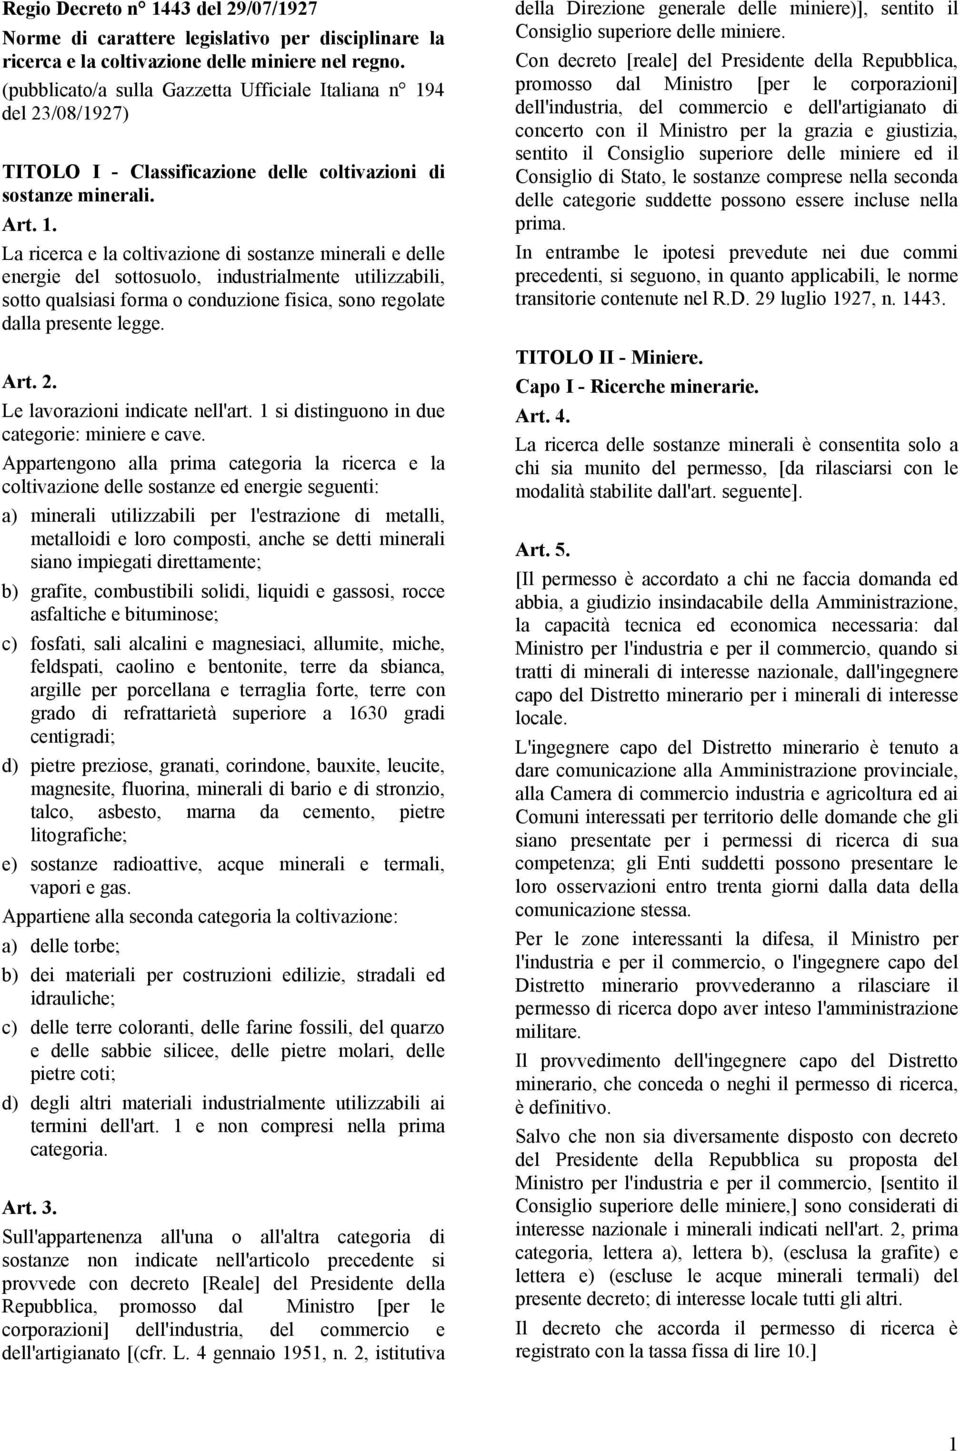 4 del 23/08/1927) TITOLO I - Classificazione delle coltivazioni di sostanze minerali. Art. 1.